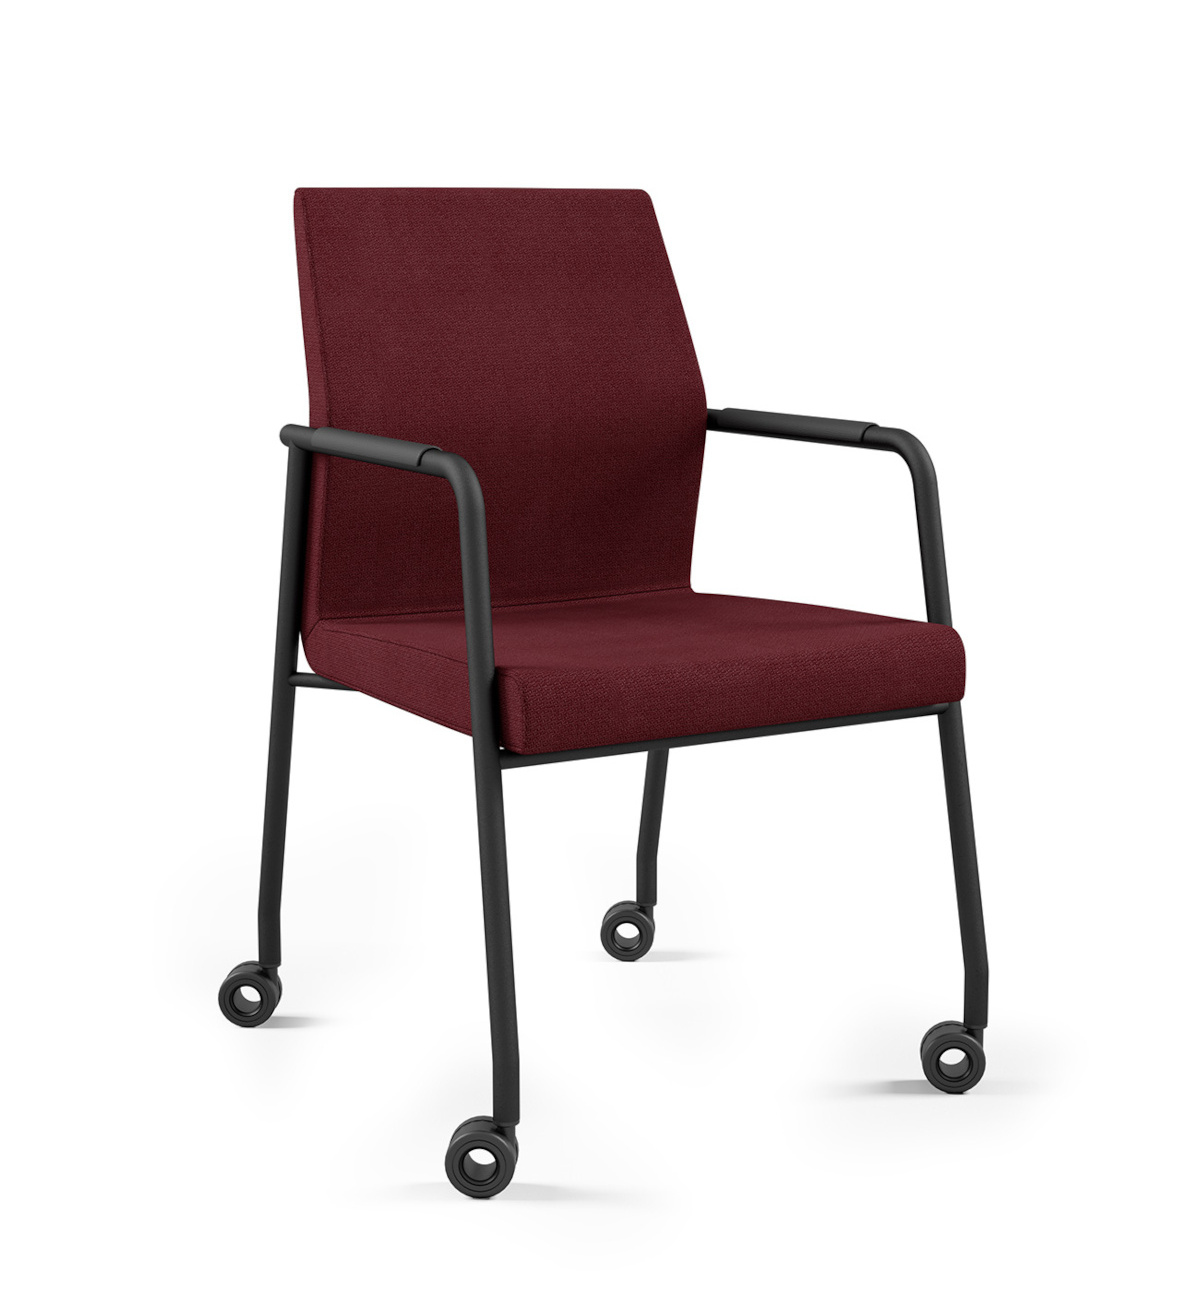 AcosPro 30HC Sessel, 4-Fuß mit Rollen, Armlehnen, nicht stapelbar